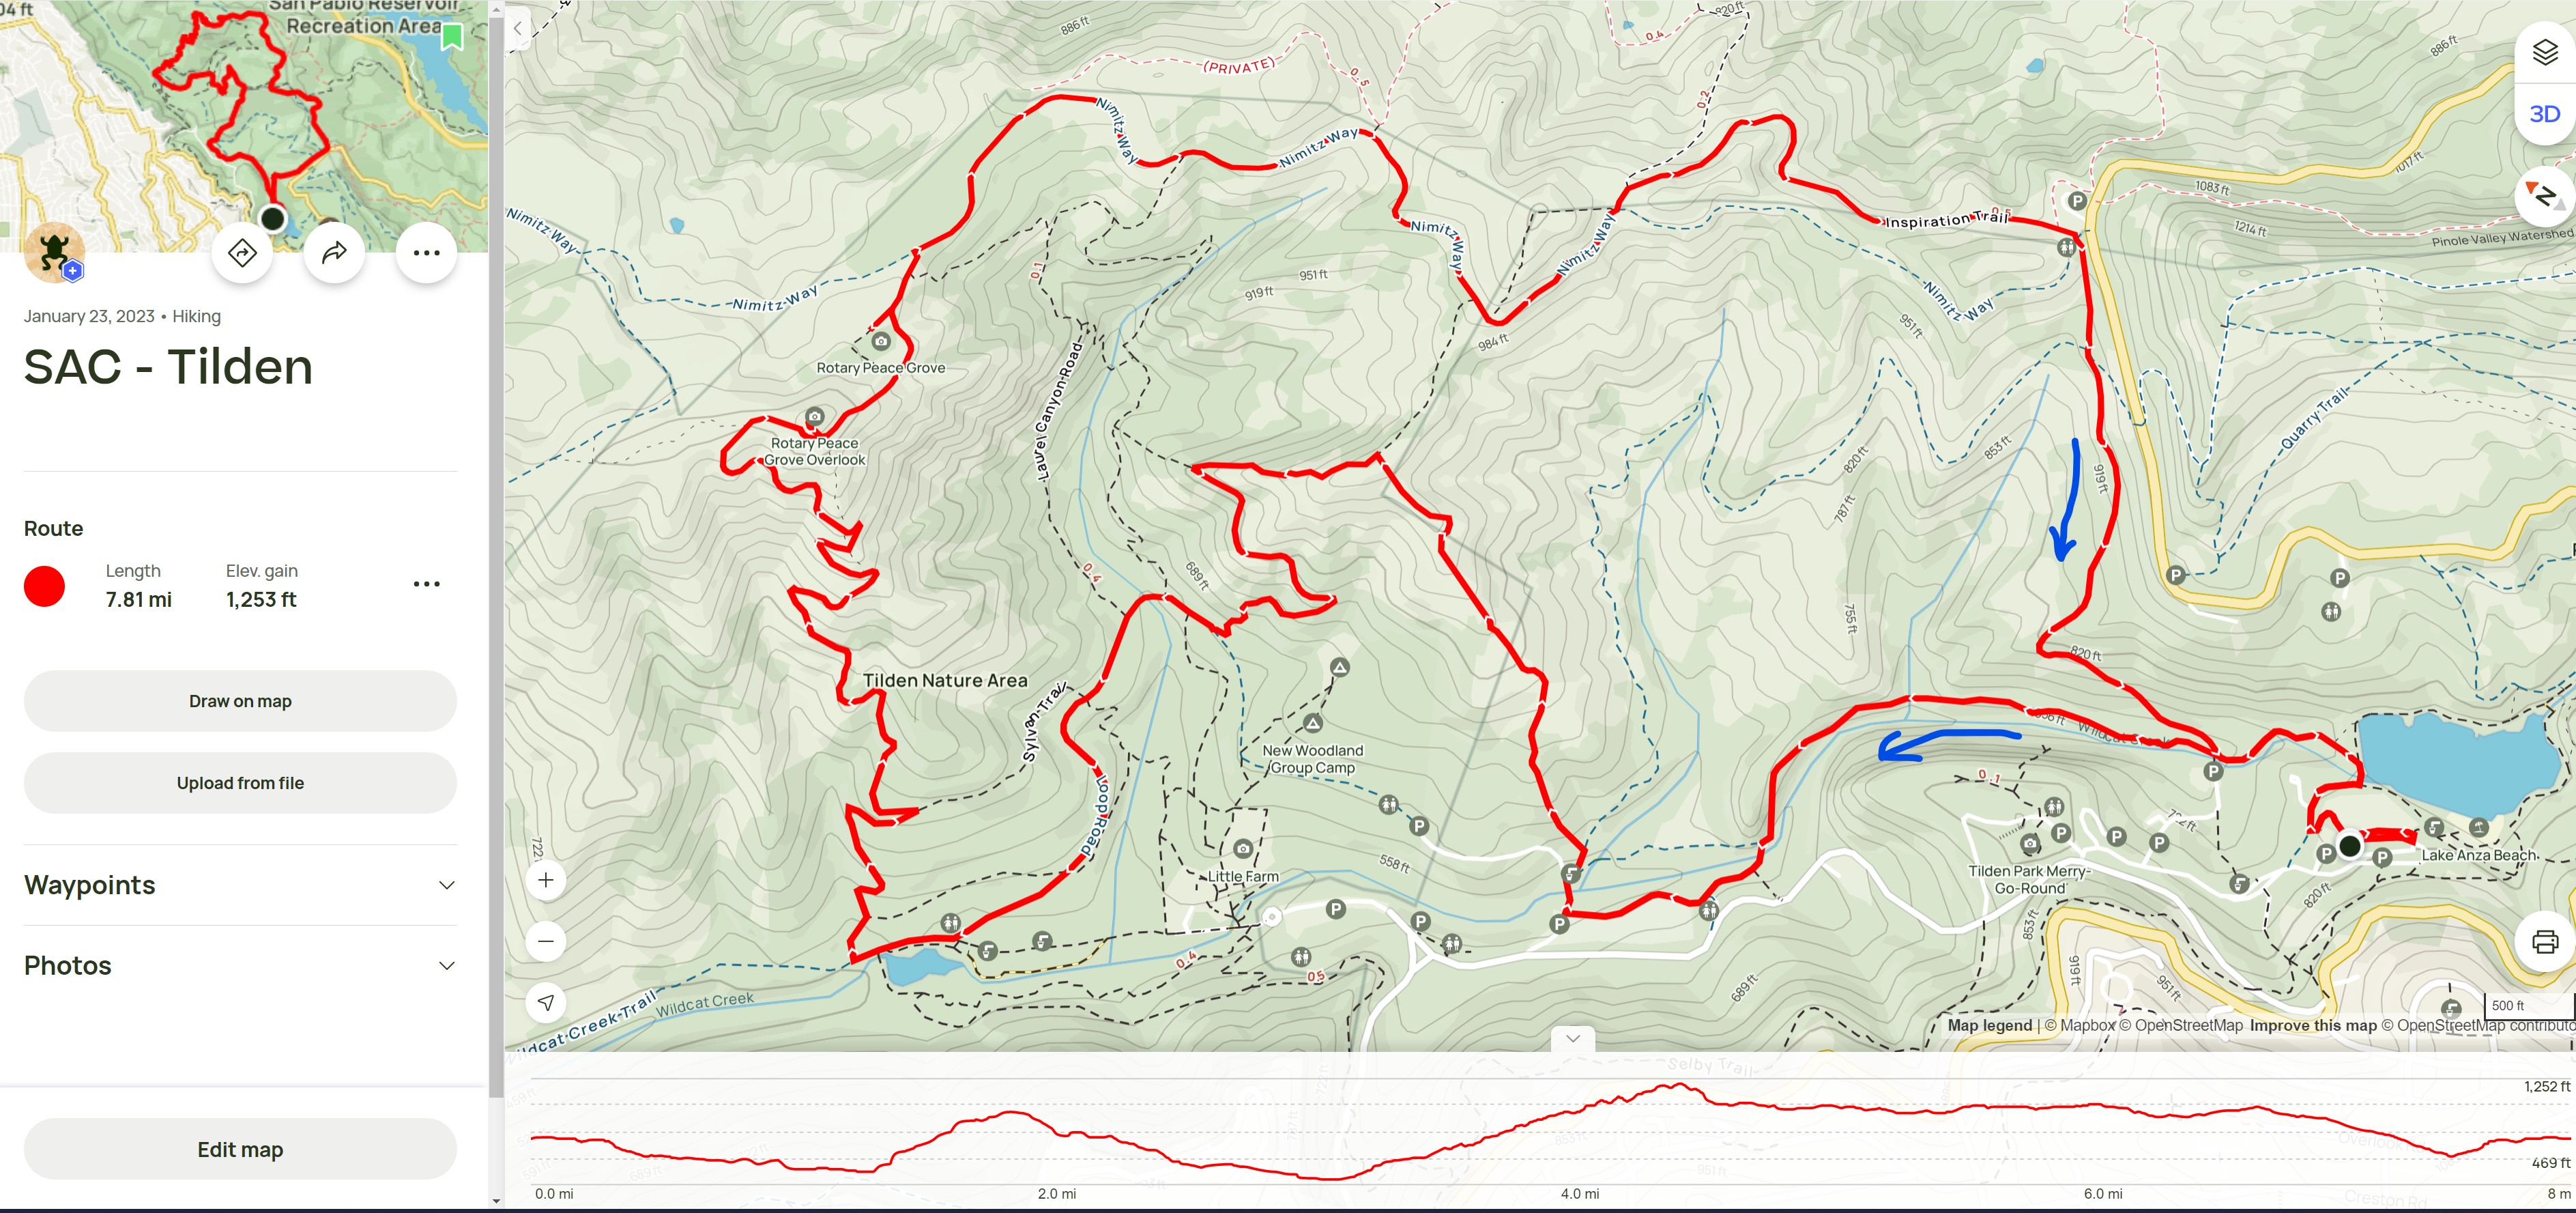 Tilden_Regional_Park_SAC_trail_Map.jpg